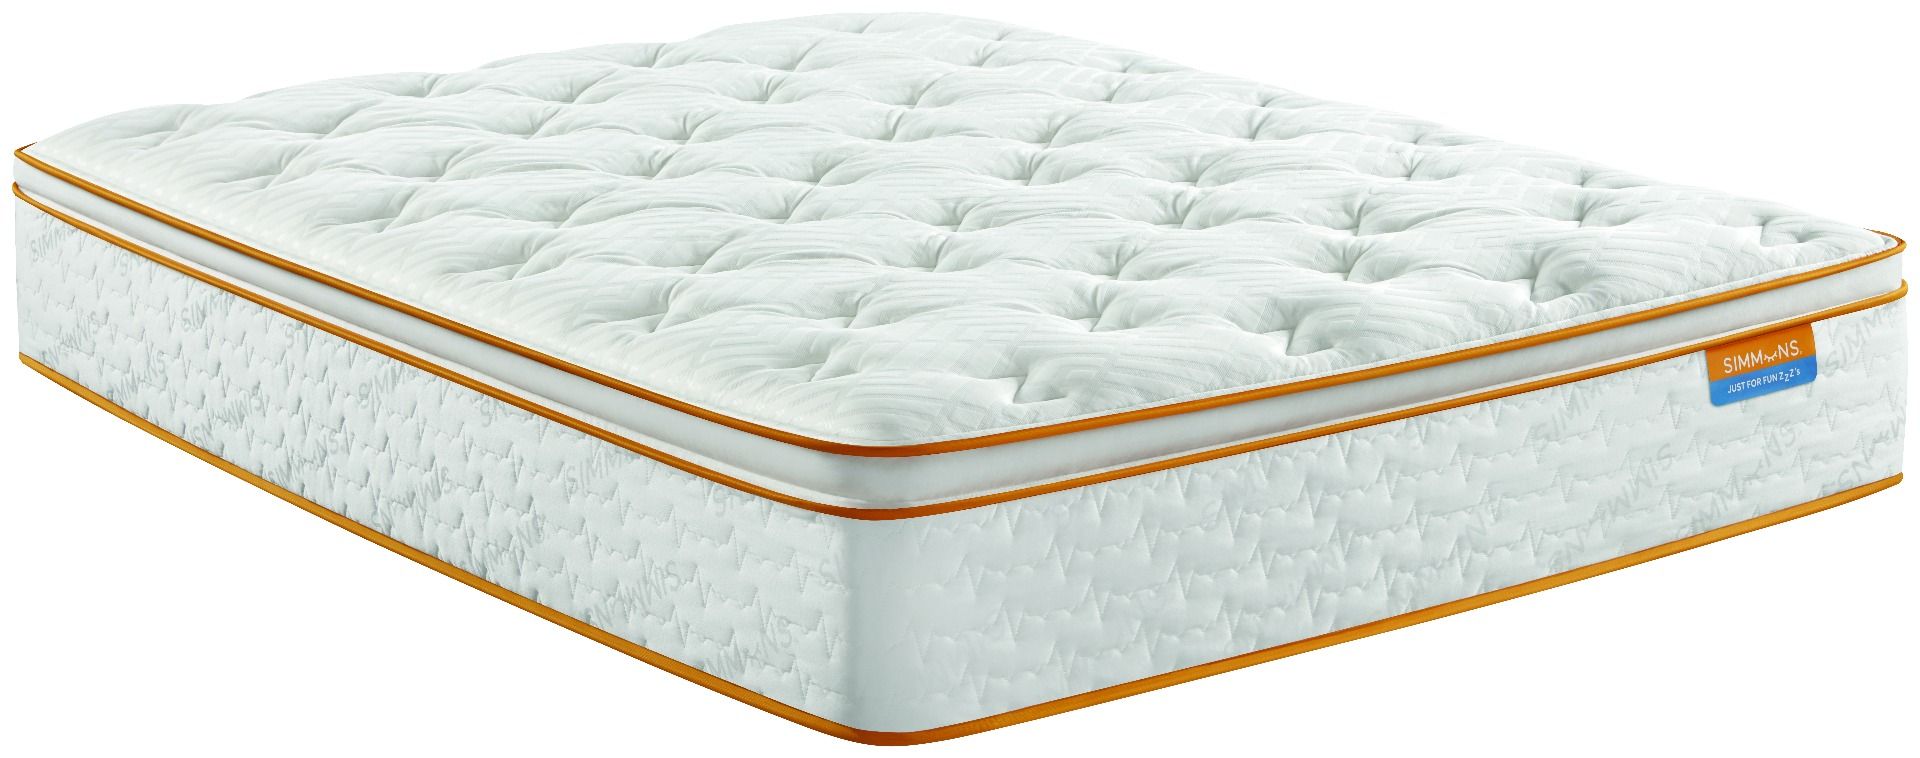 Simmons Sleep Thrillzzz Plush Pillow, King Bed Pillow Top Mattress